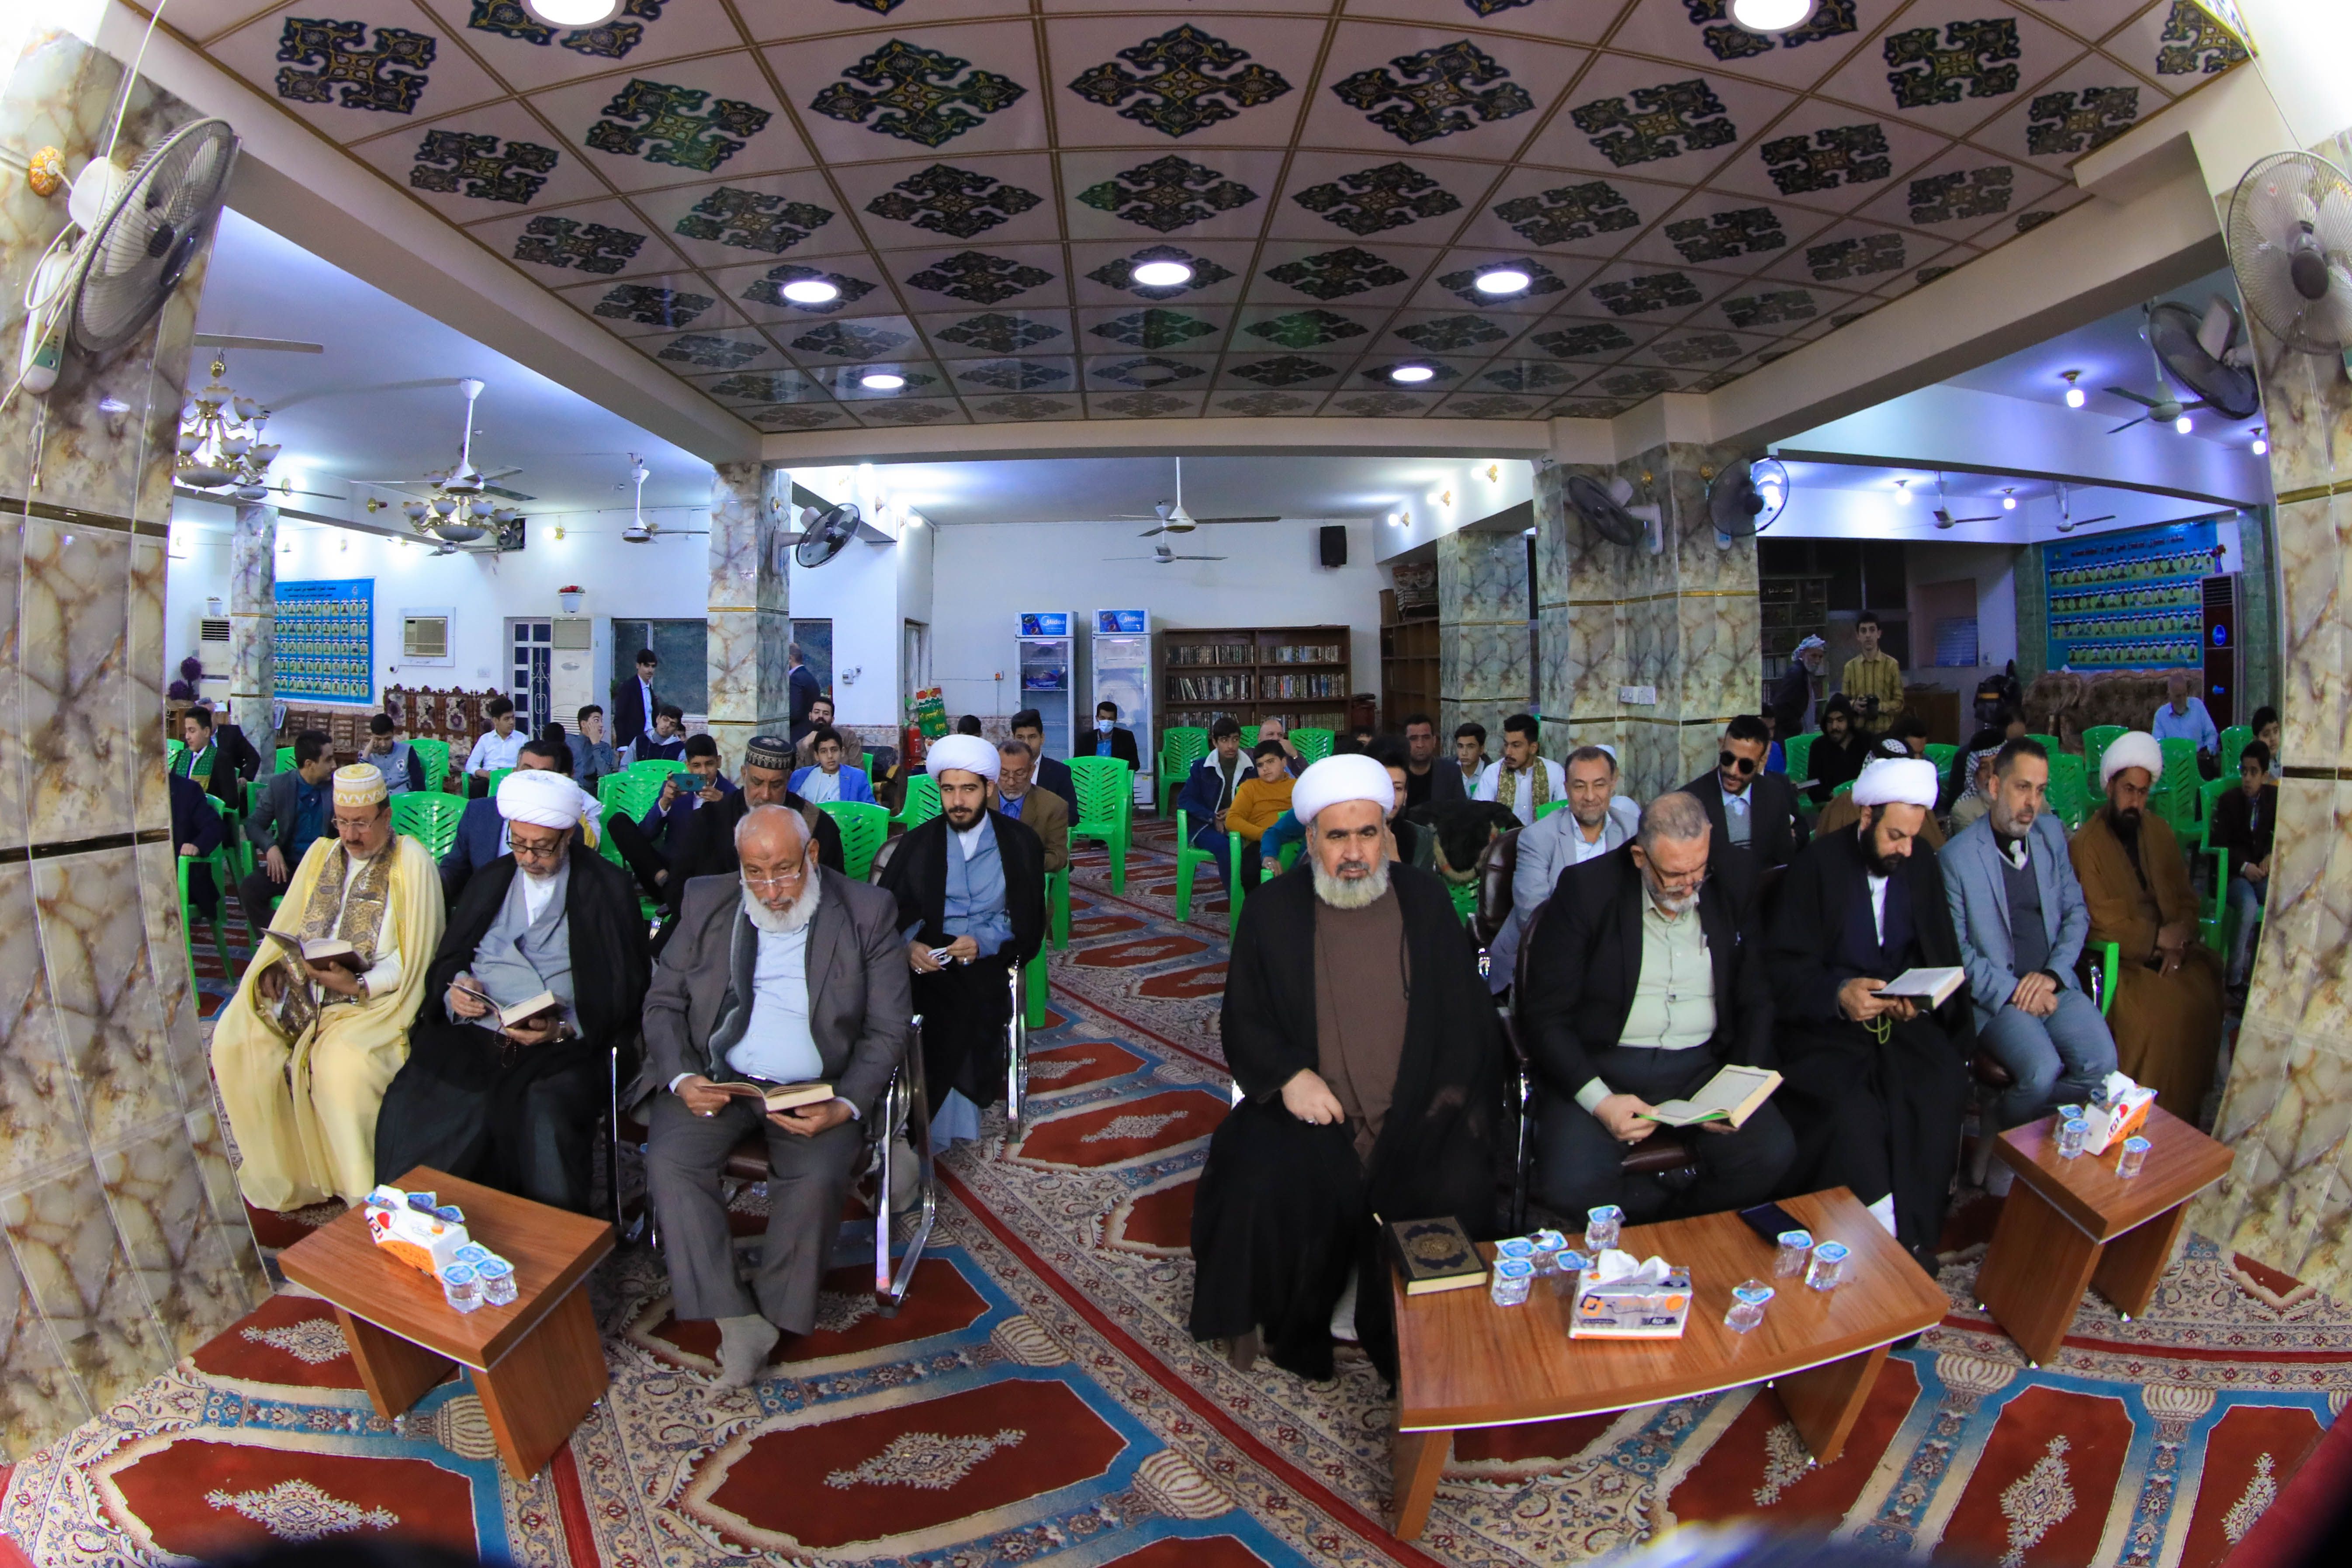 انطلاق فعاليات المسابقة القرآنية السنوية الخامسة الخاصة بطلبة المدارس الثانوية في بغداد